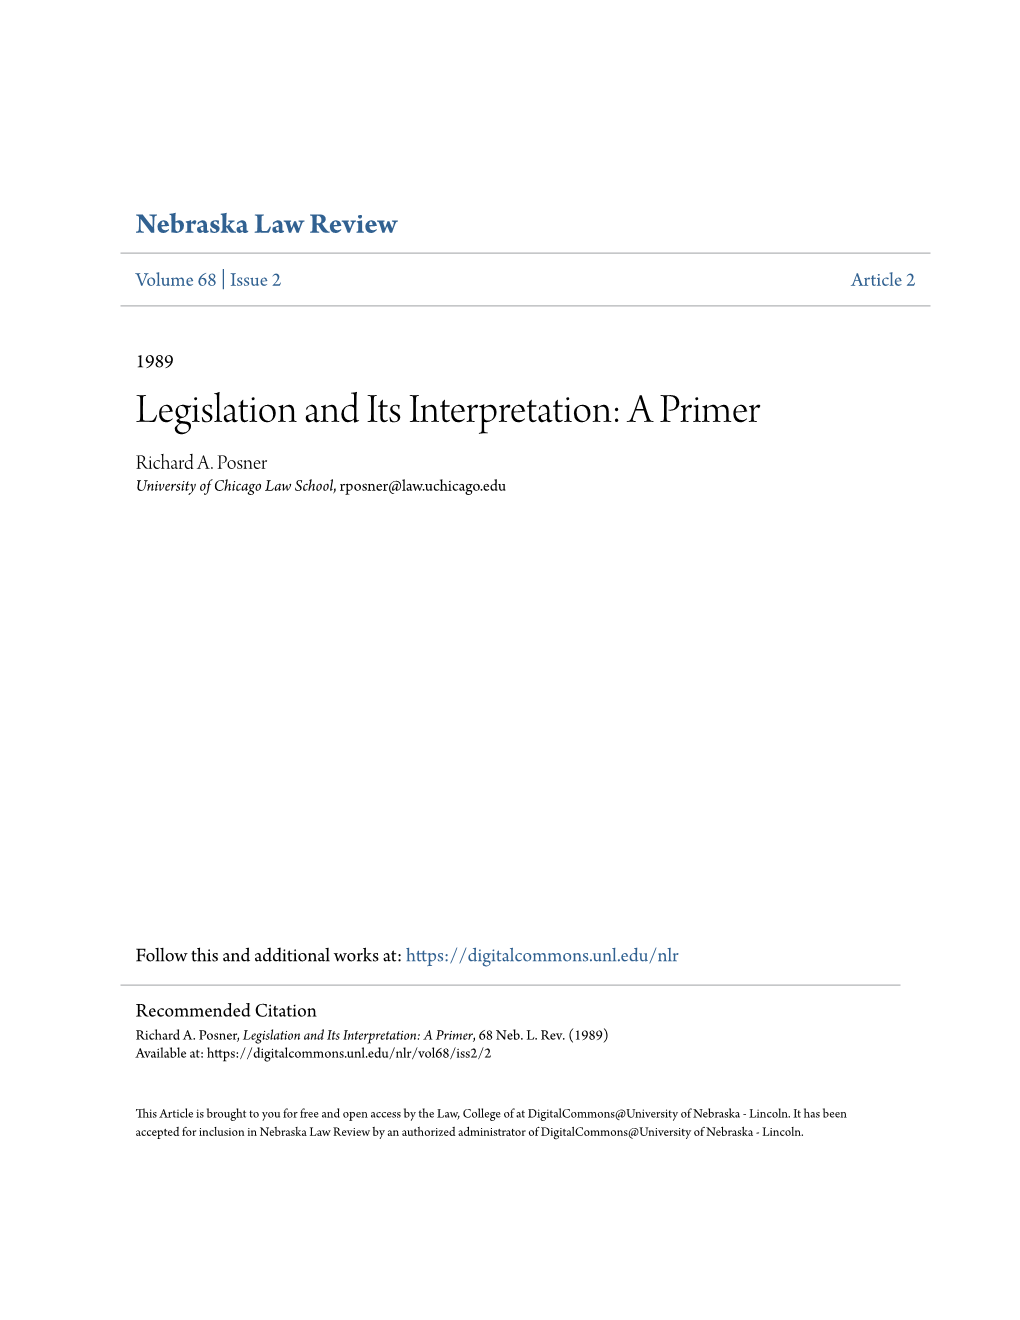 Legislation and Its Interpretation: a Primer Richard A